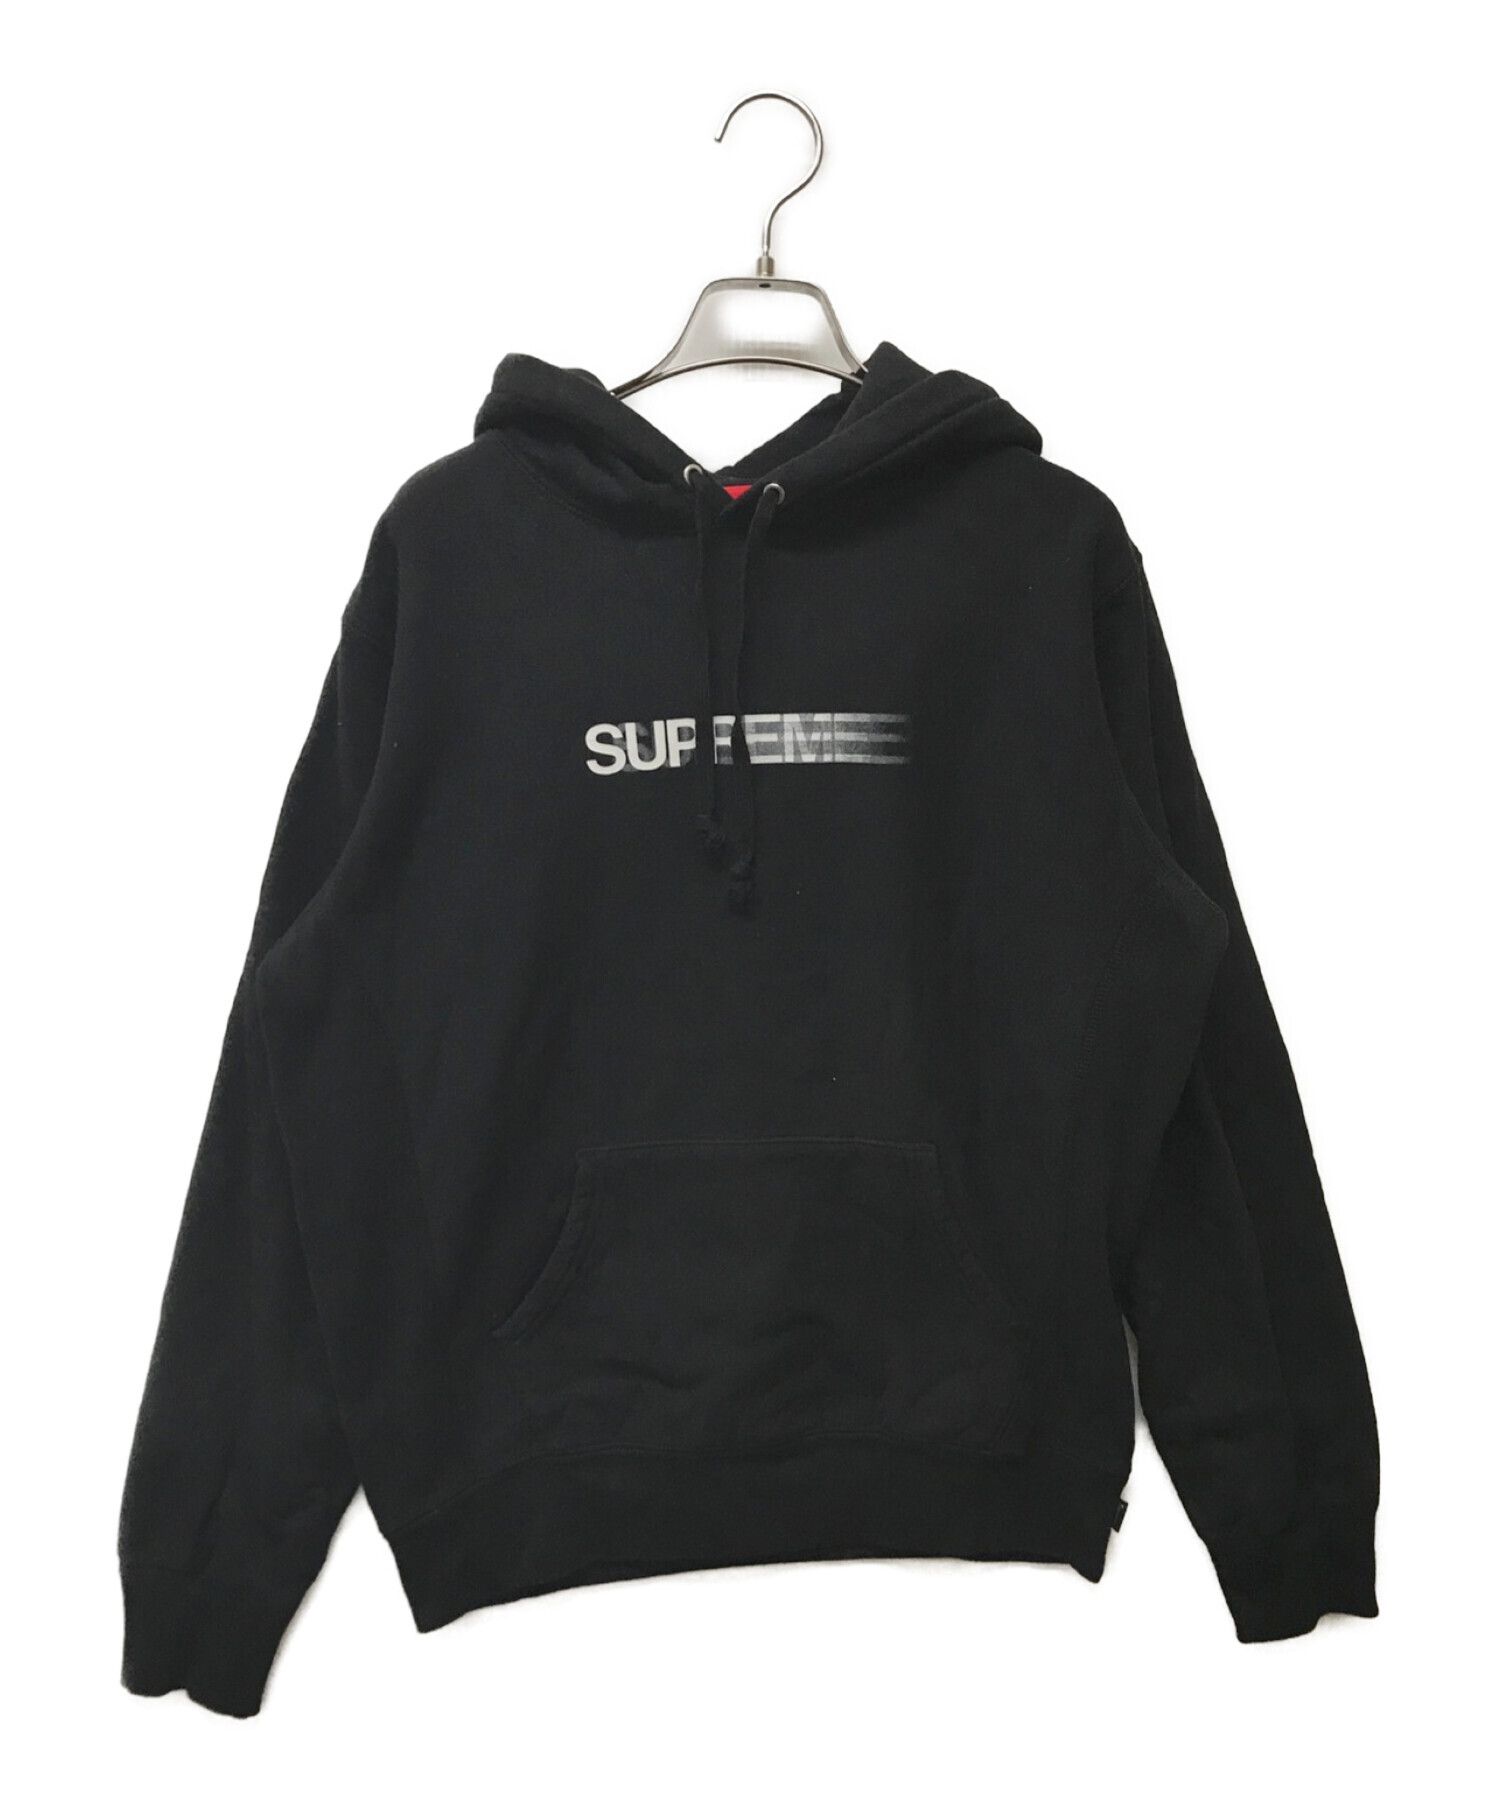 Supreme (シュプリーム) Motion Logo Hooded Sweatshirt ブラック サイズ:S